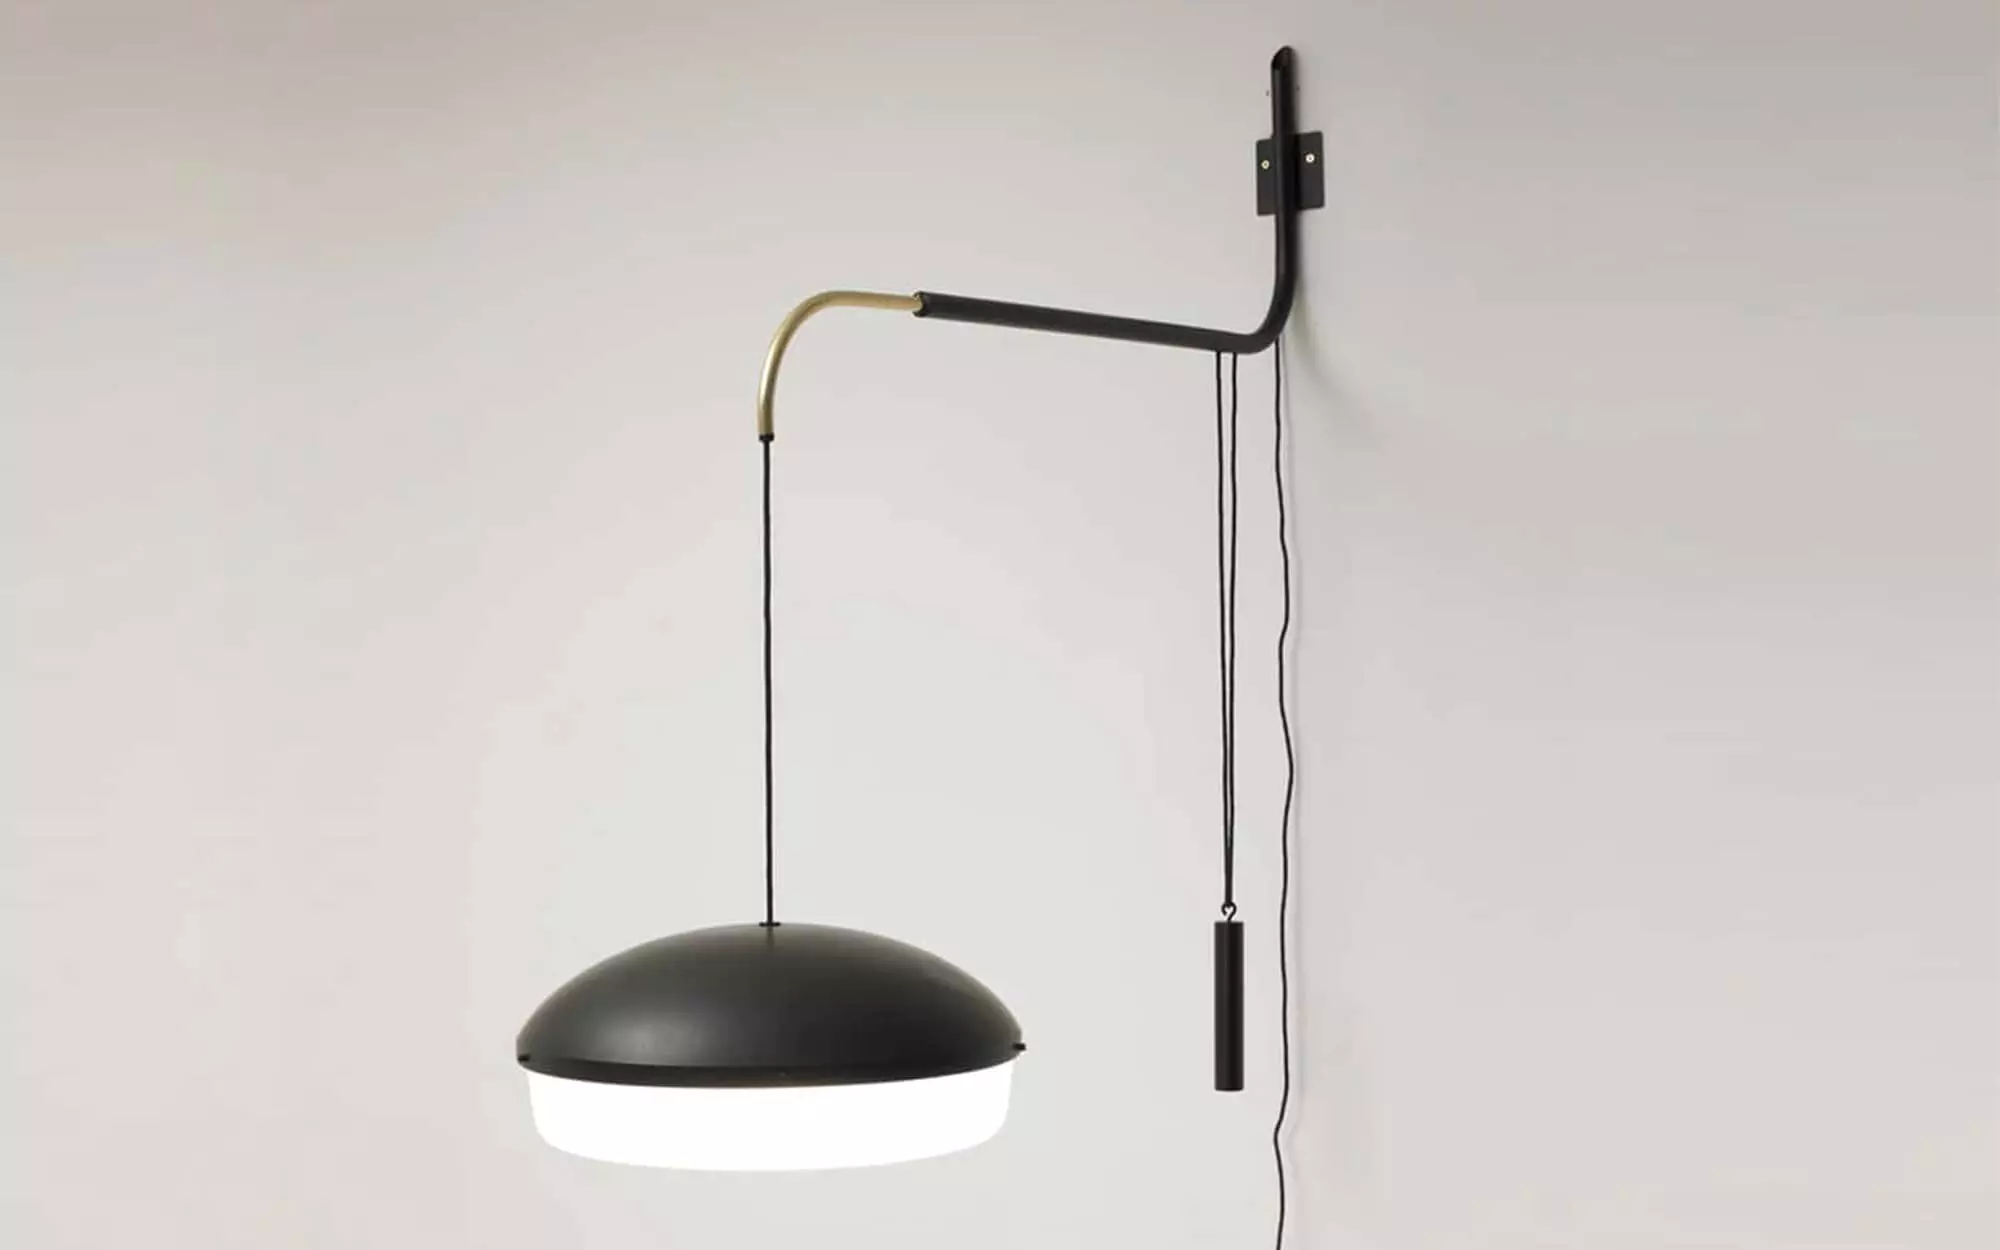 233 - Gino Sarfatti - Table light - Galerie kreo